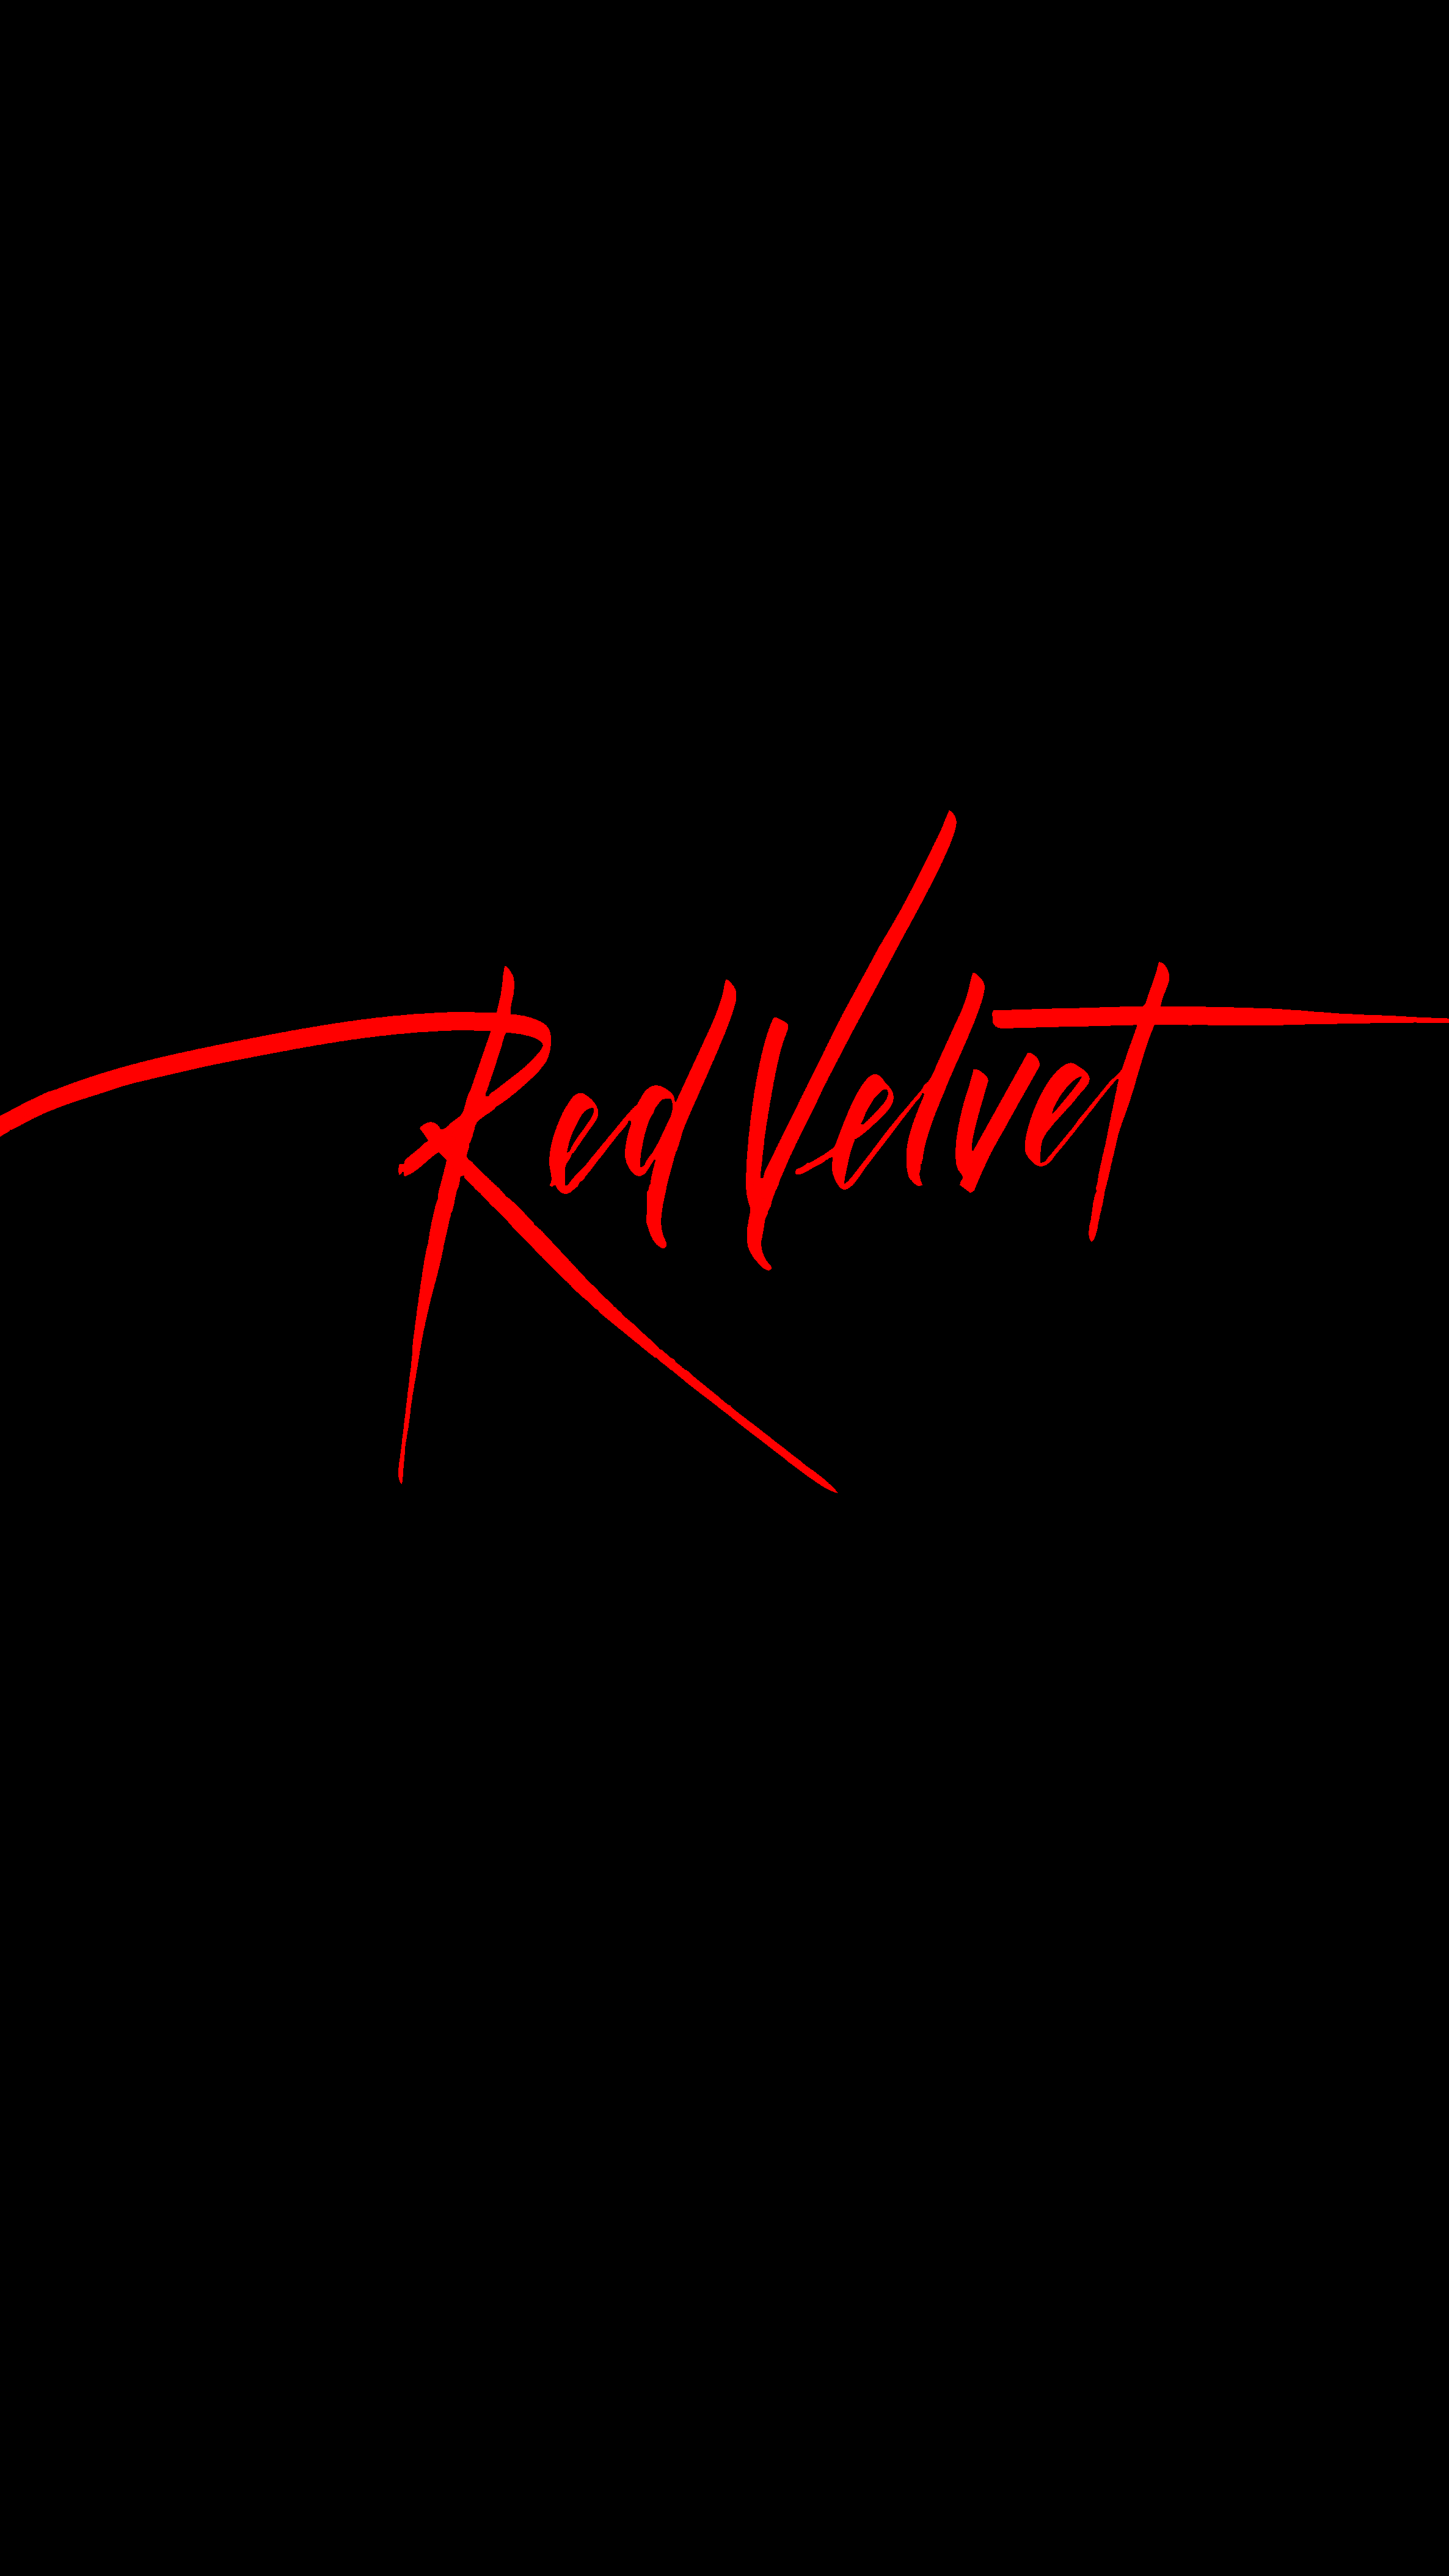 Red Velvet Logo Wallpapers Wallpaper Cave